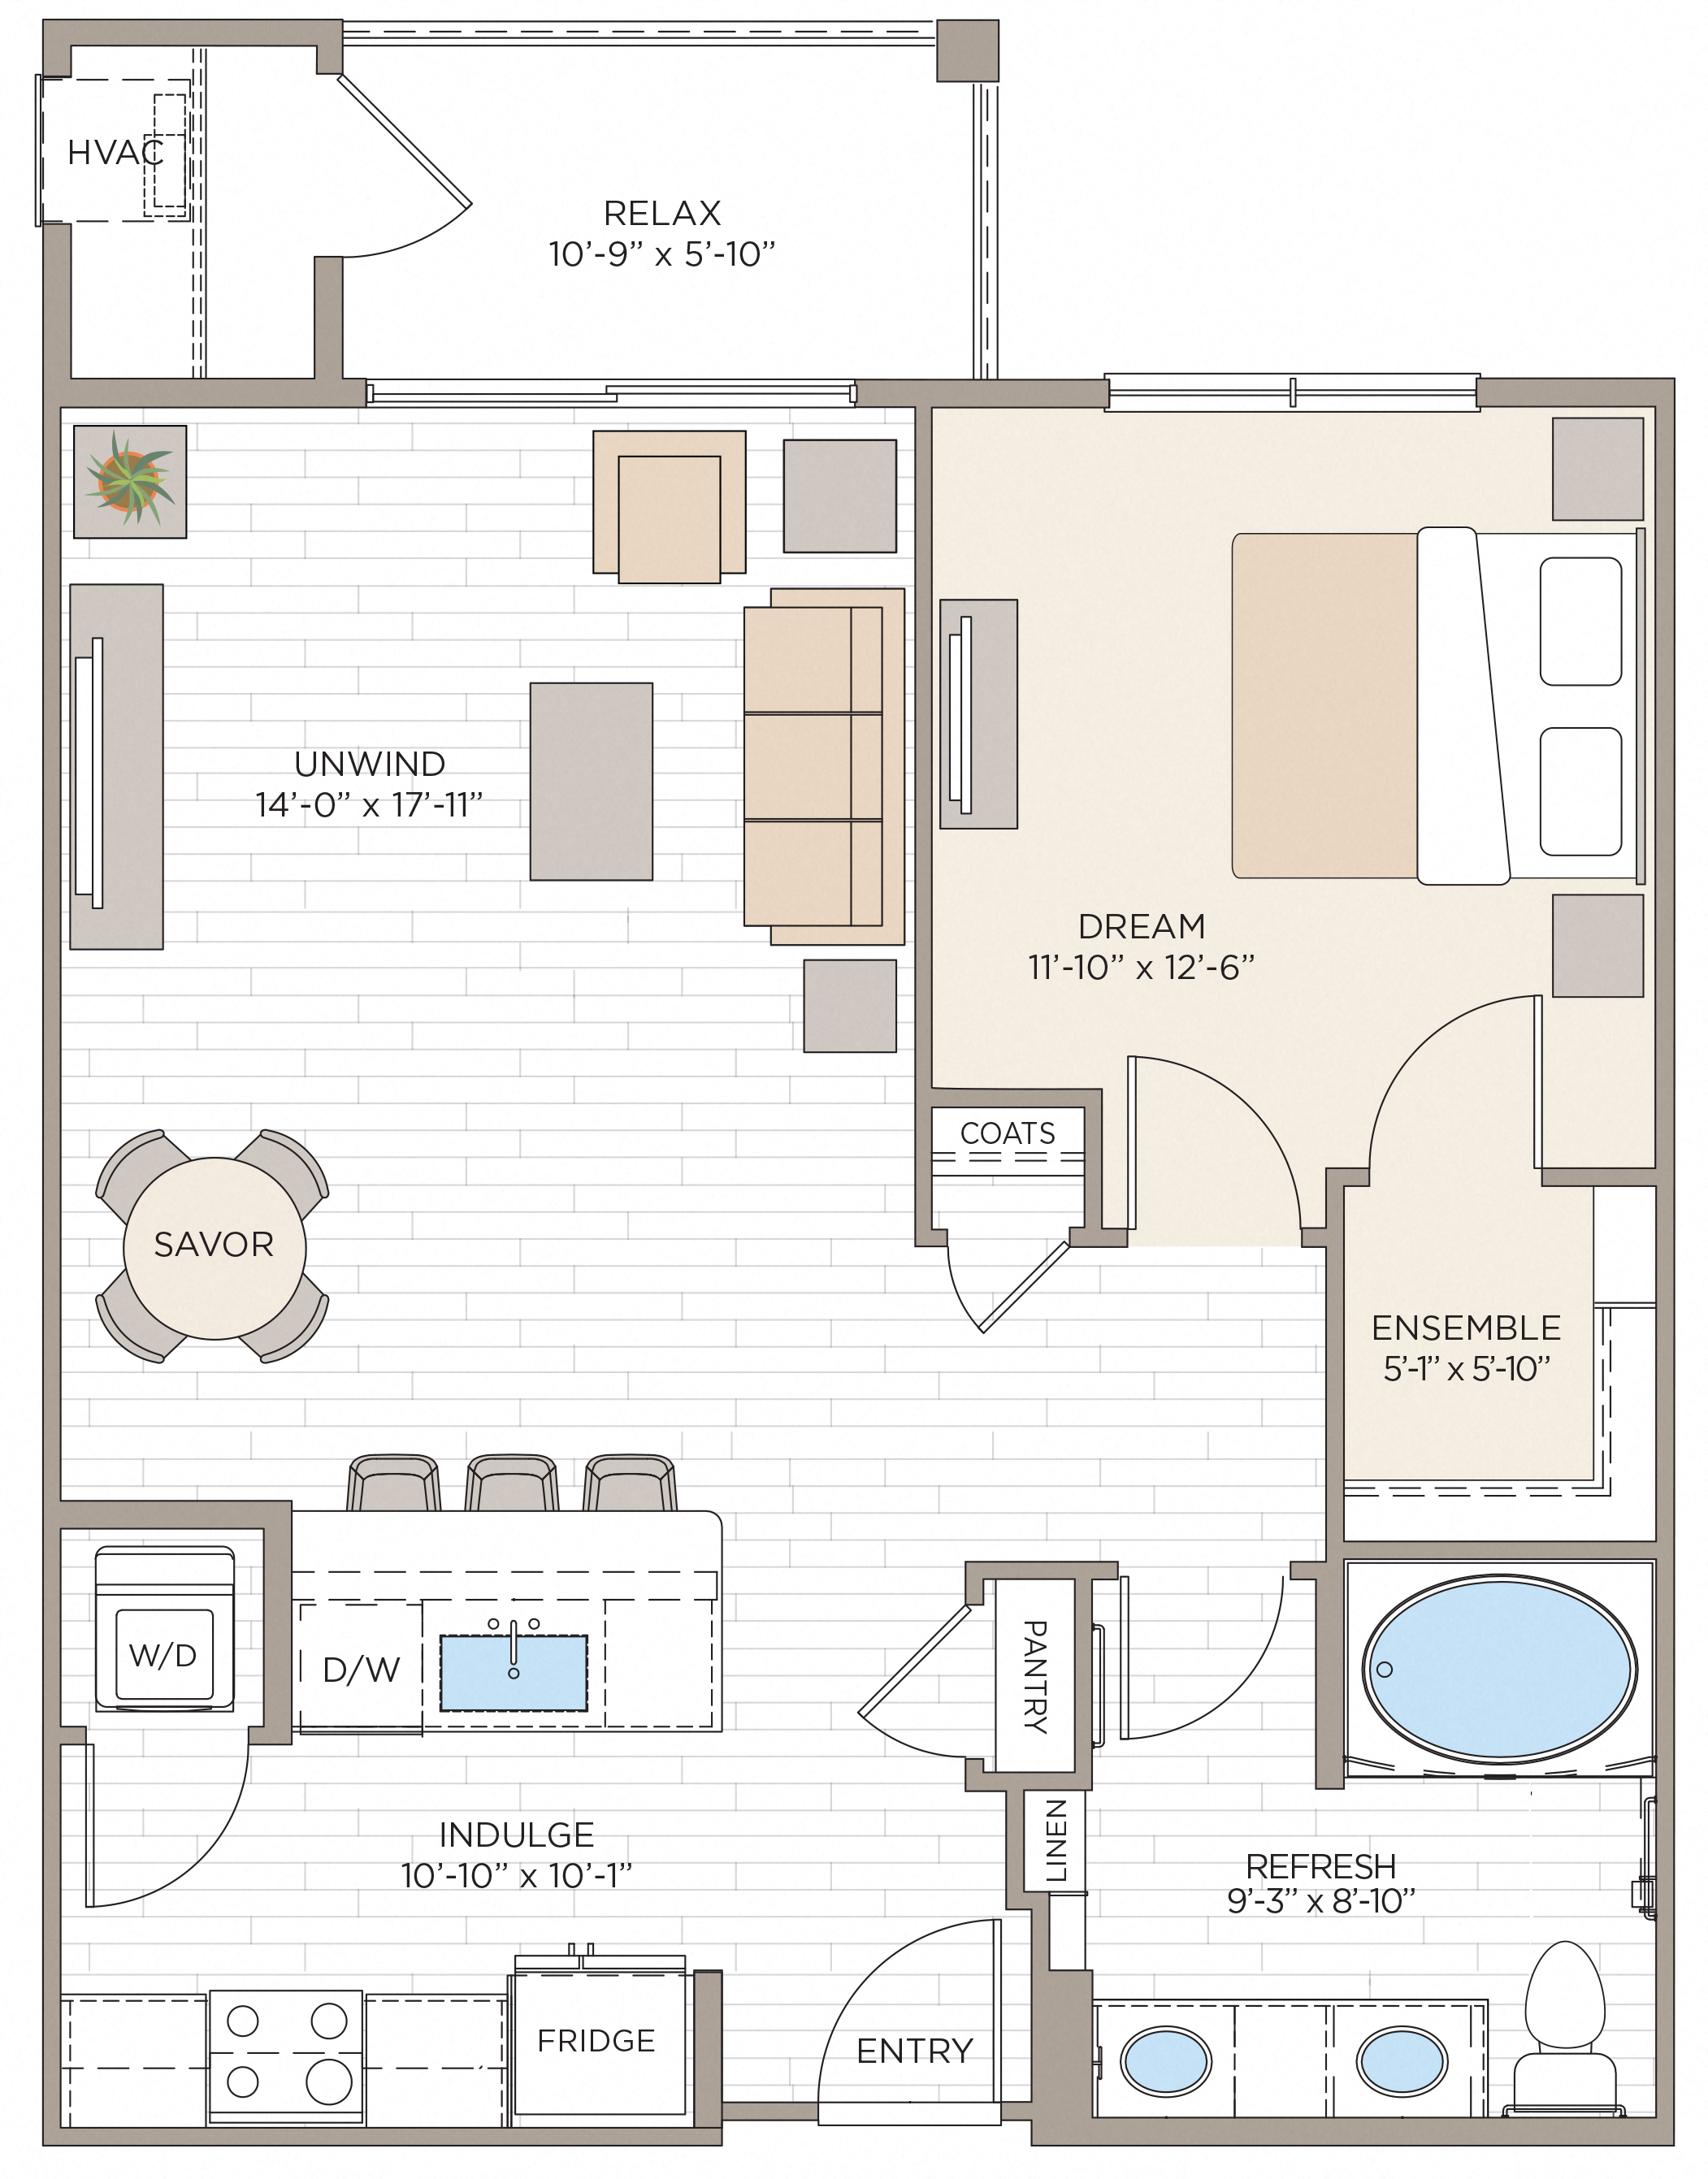 Floorplan for Apartment #10316, 1 bedroom unit at Halstead Maynard Crossing